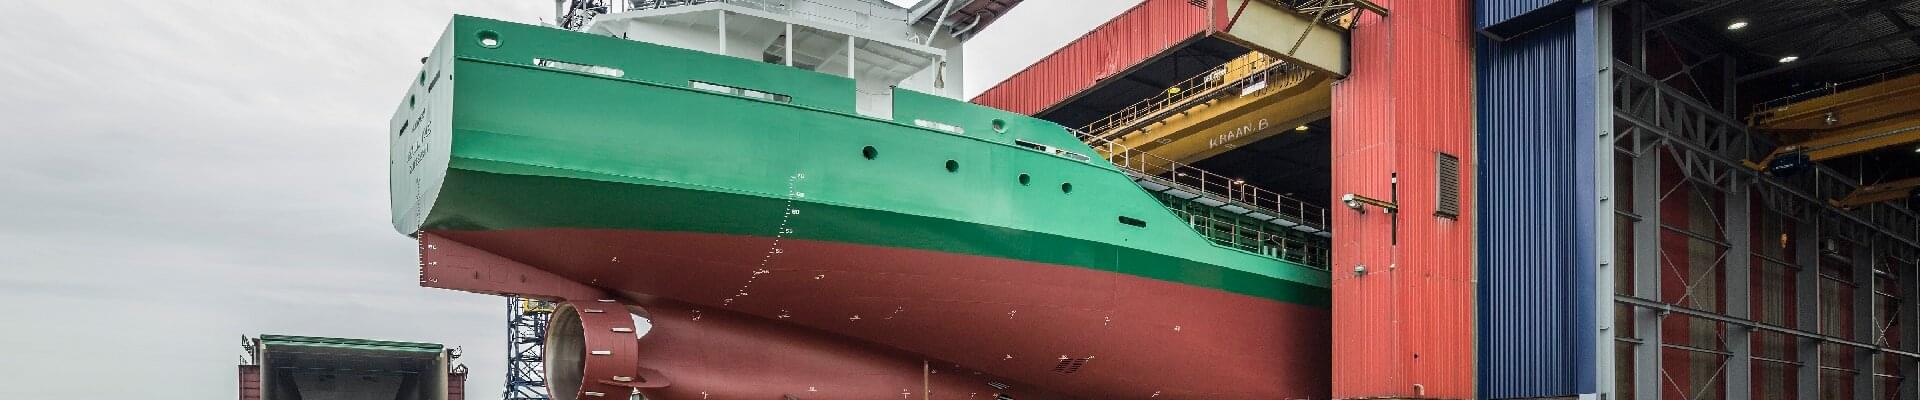 ABUS Krane für neue Produktionshalle einer niederländischen Schiffswerft